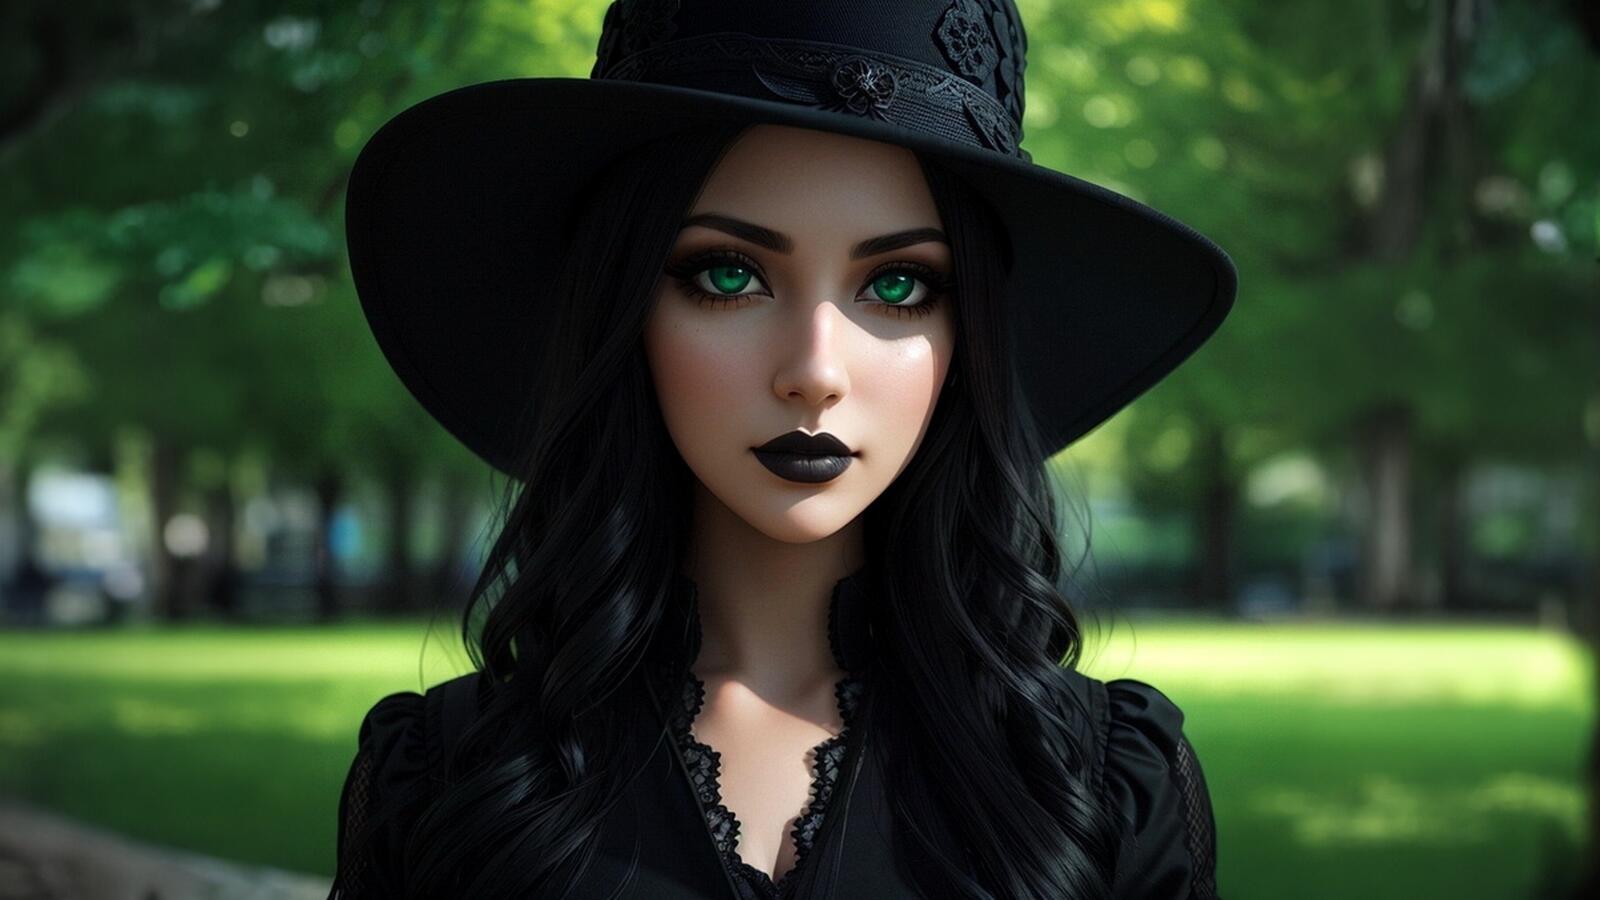 Бесплатное фото Портрет девушка в черной шляпе в парке